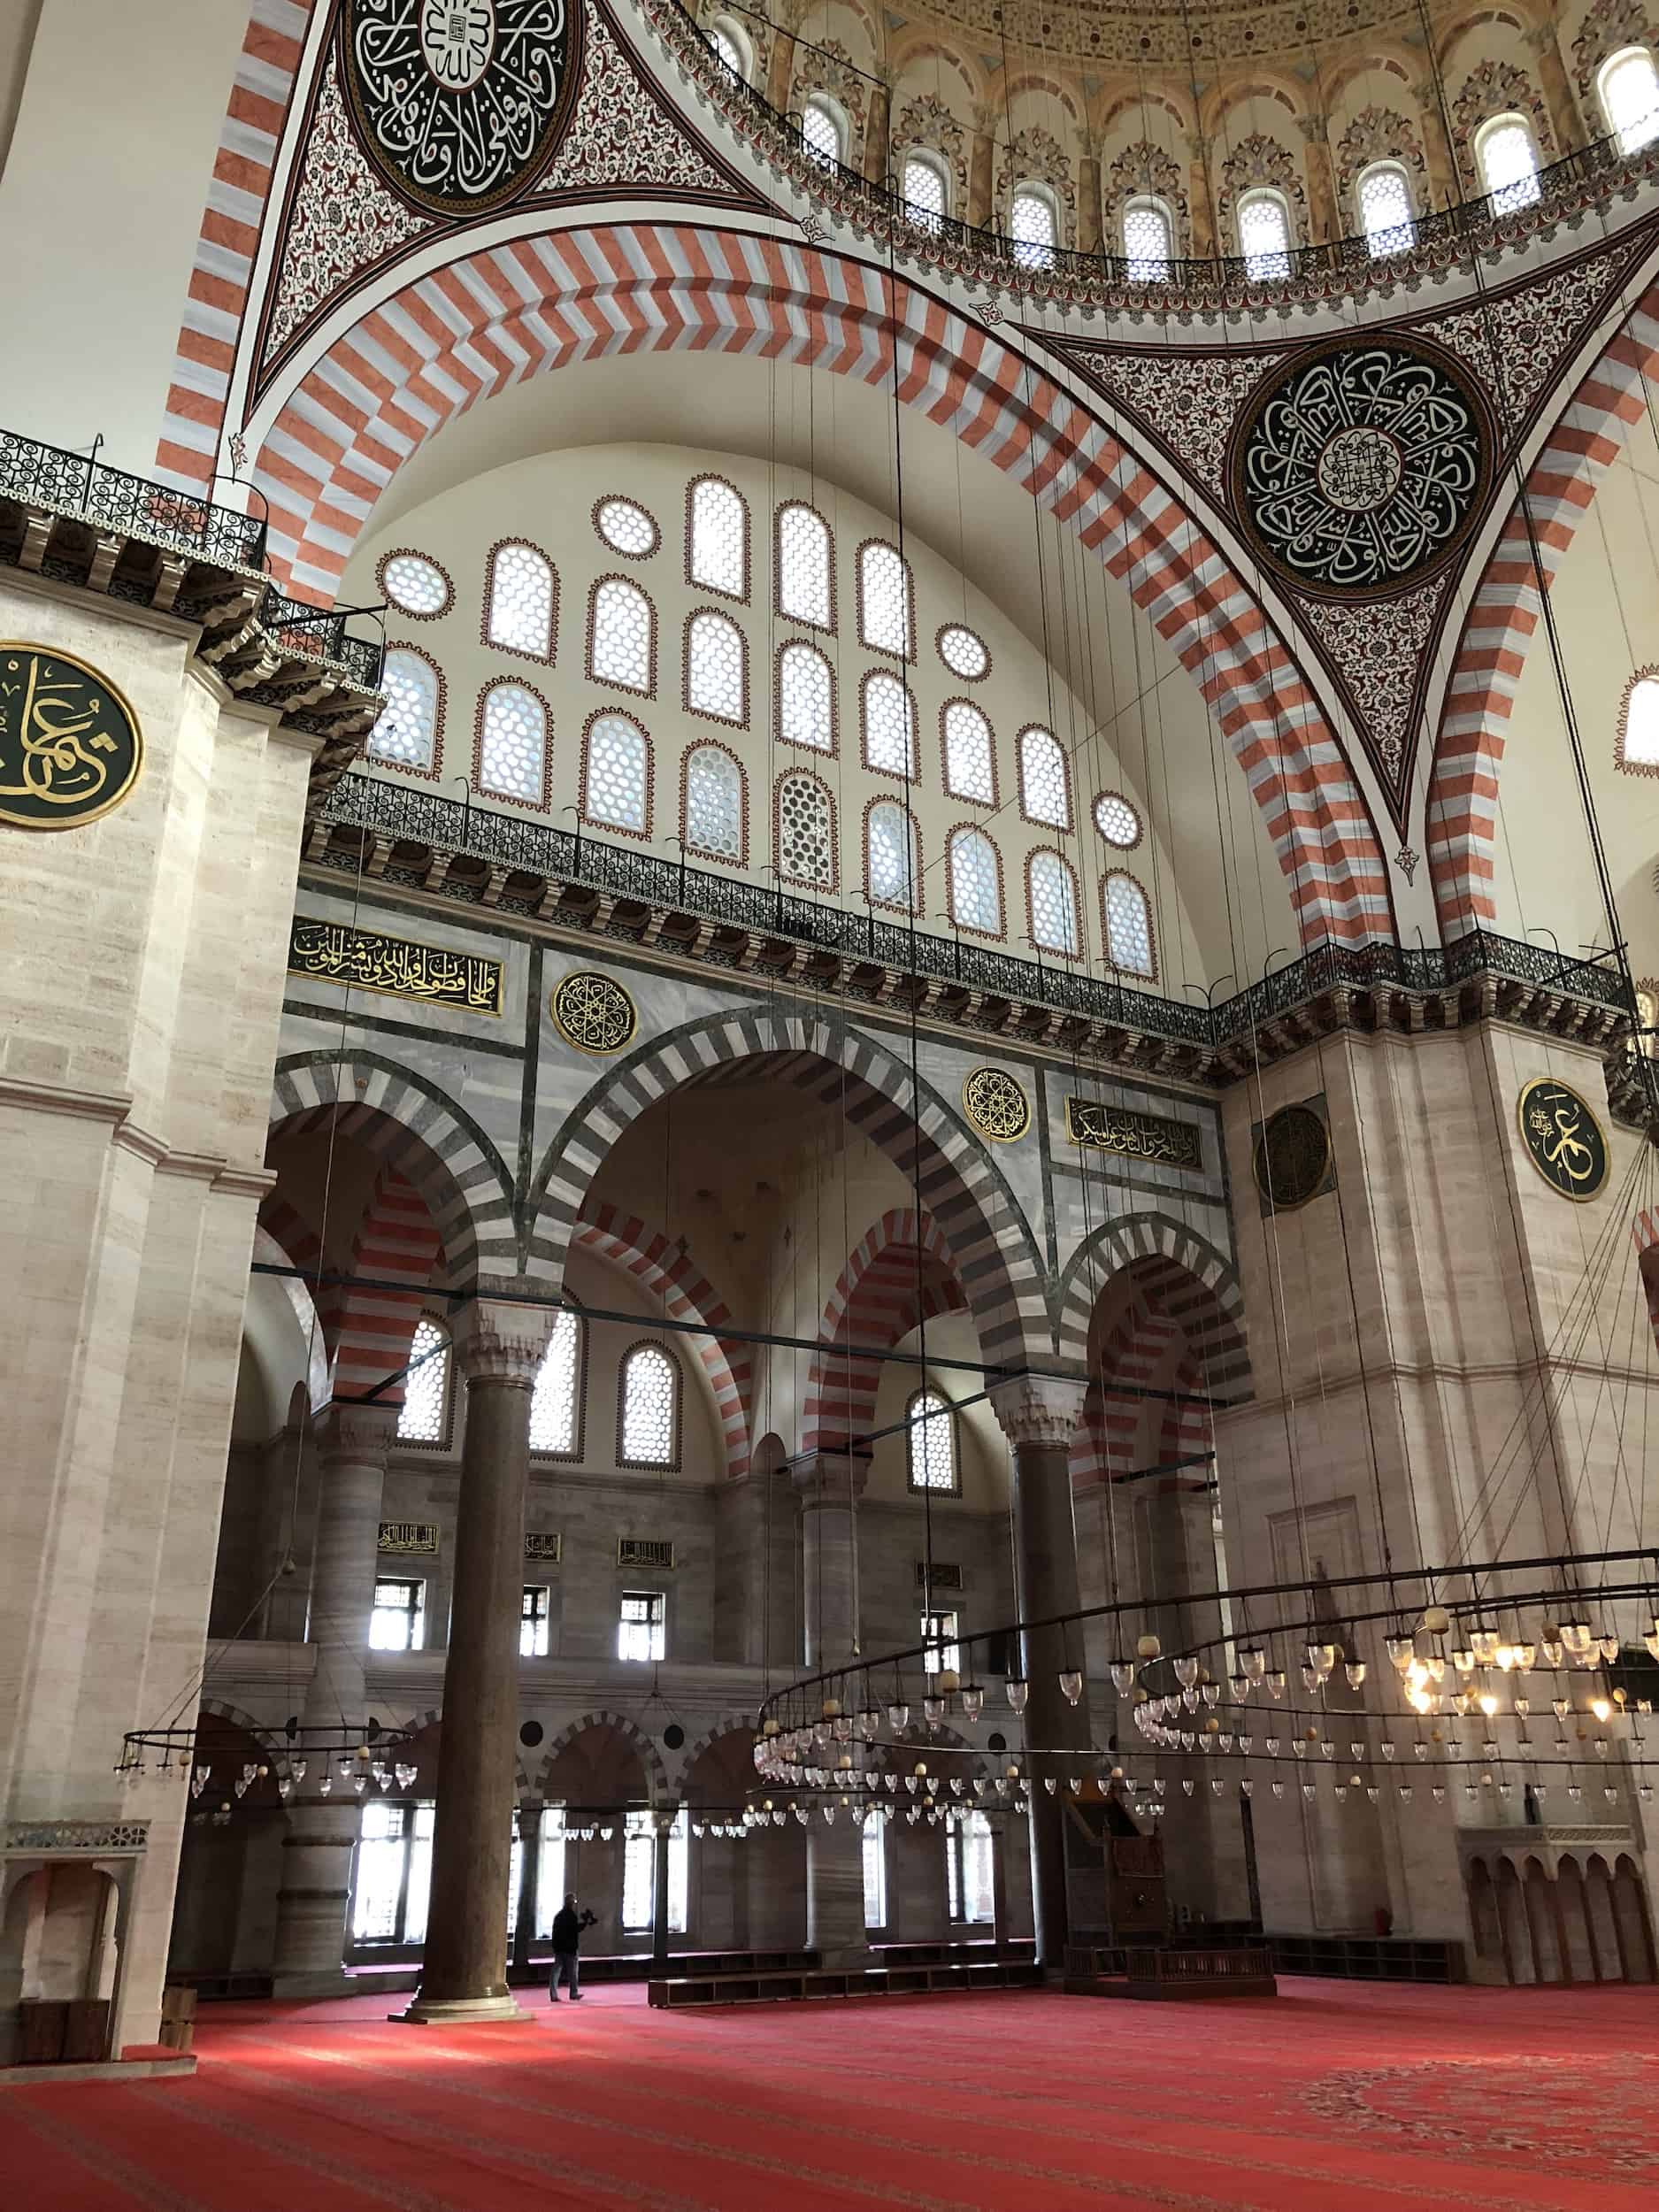 North tympanum of the Süleymaniye Mosque in Istanbul, Turkey